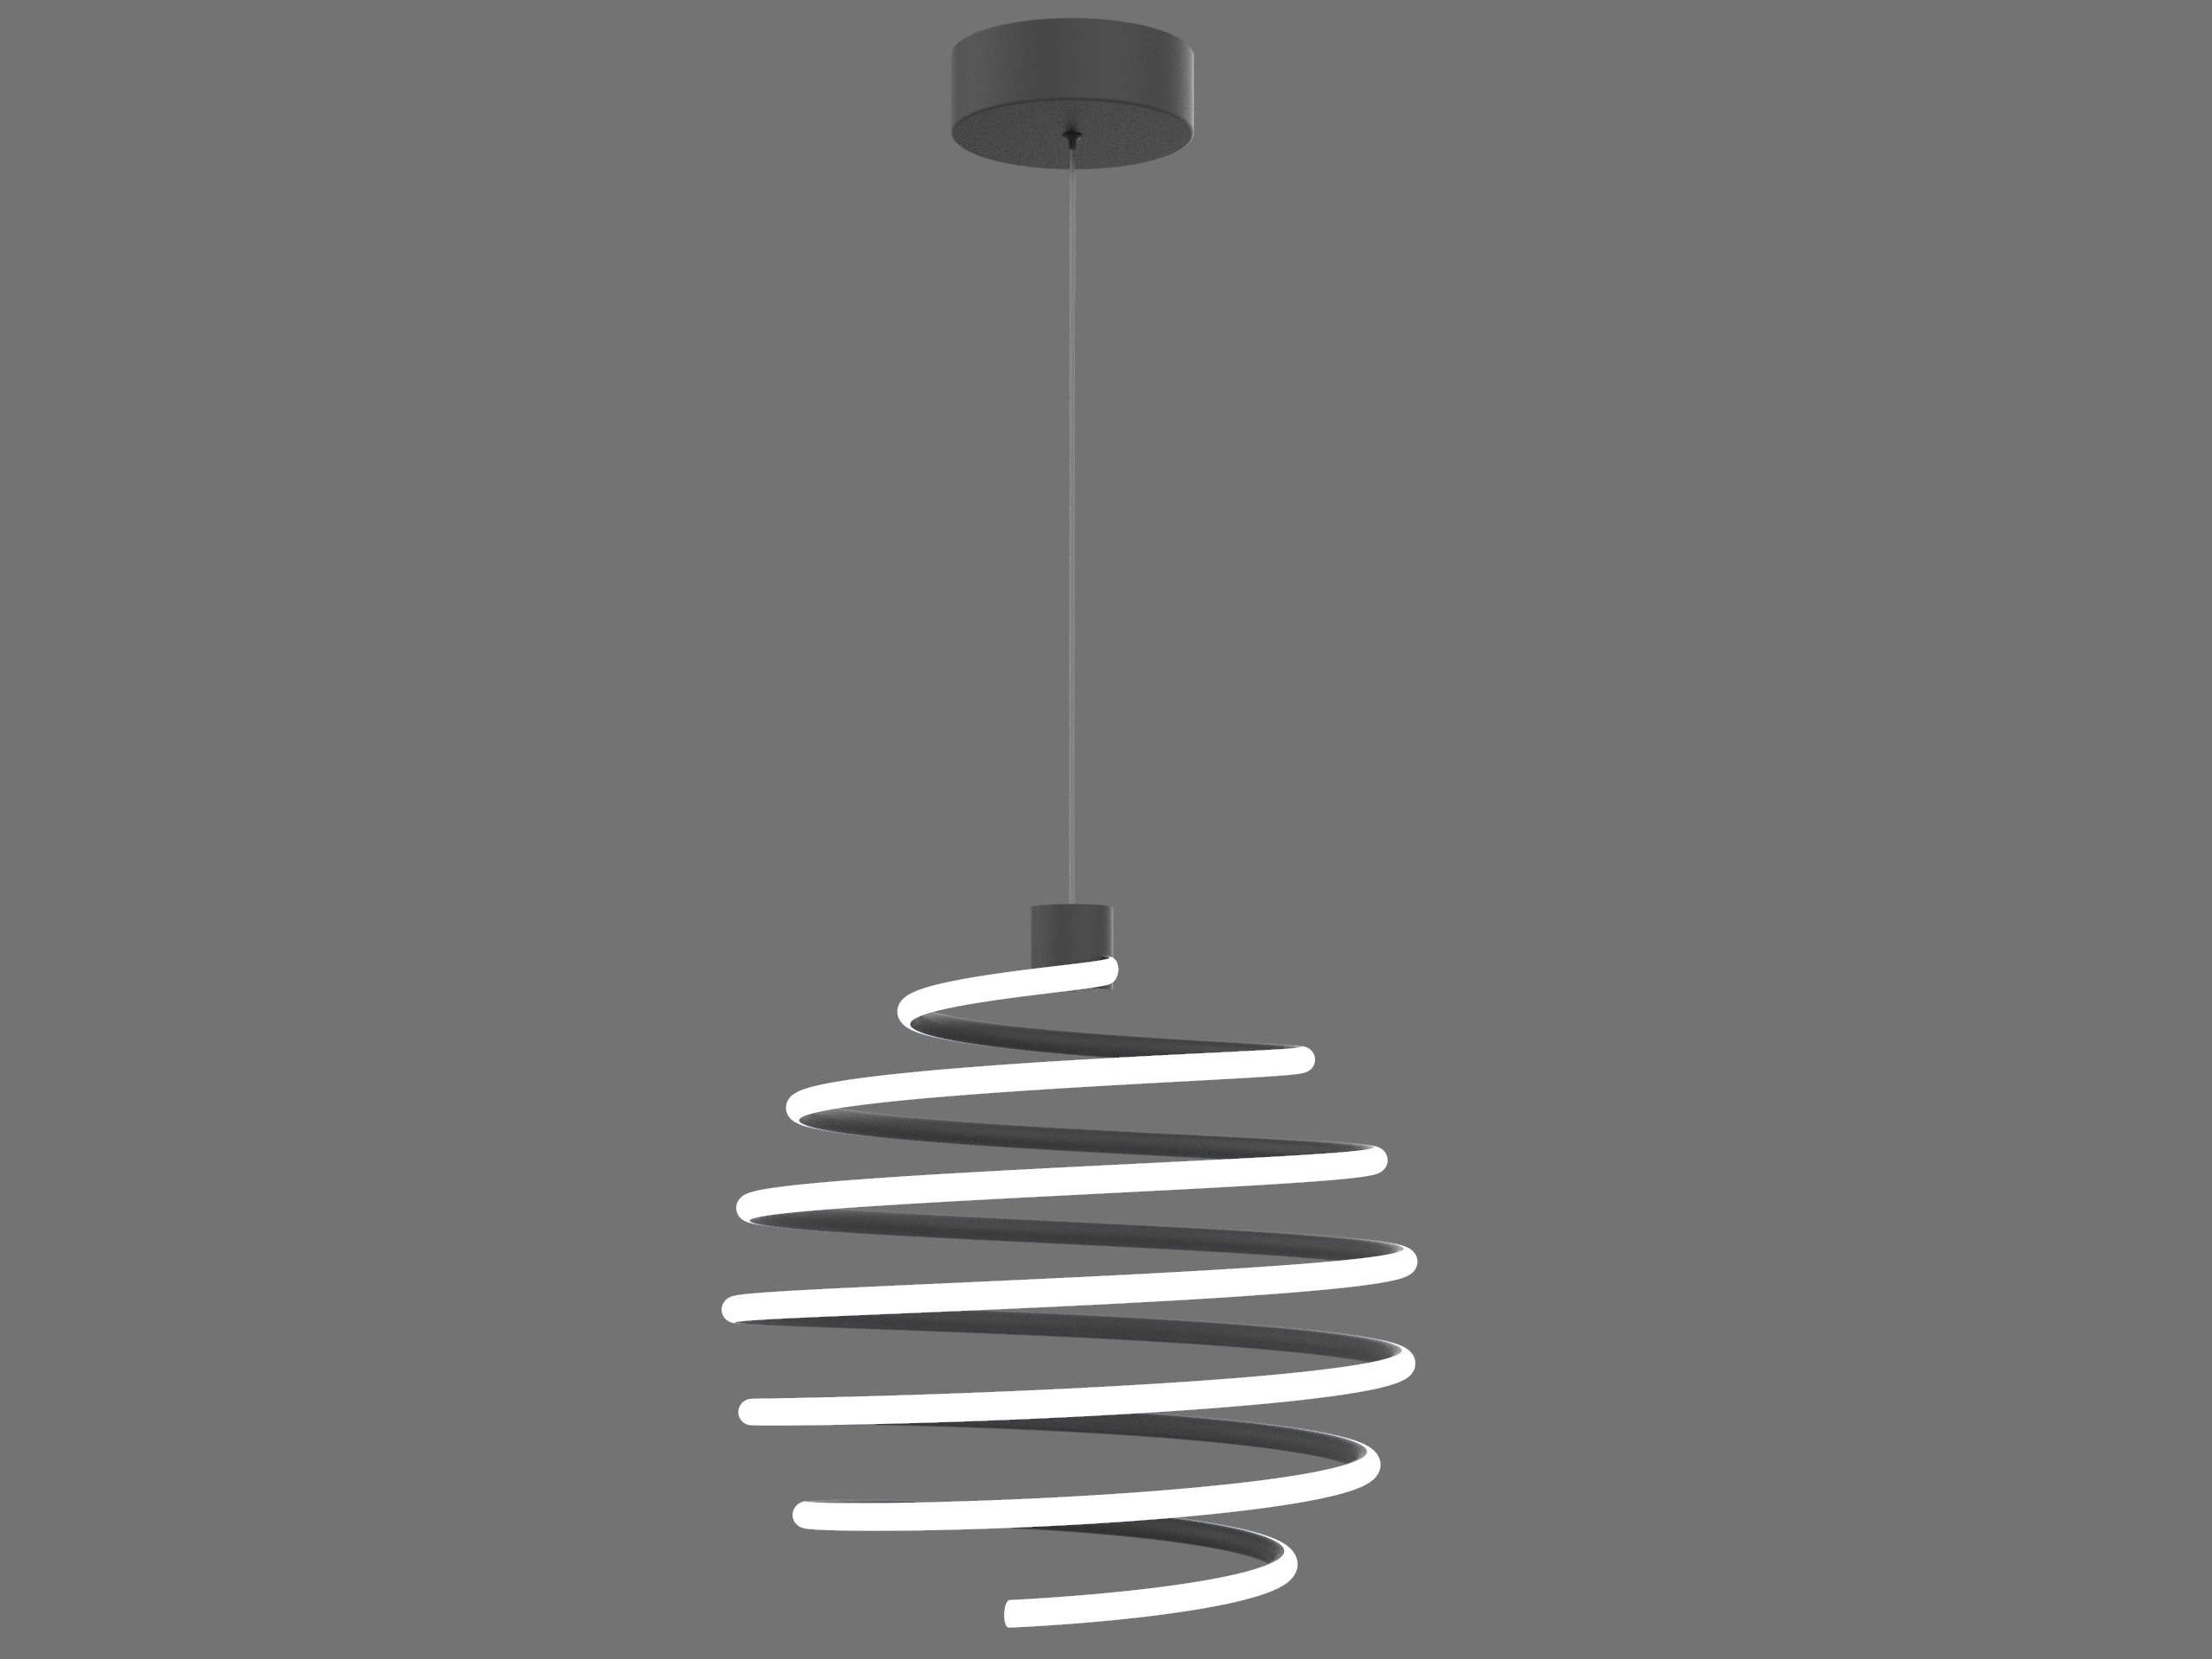 New LED Spiral Decoration Decor Lamp Modern LED Linear Pendant Light Ceiling Lighting